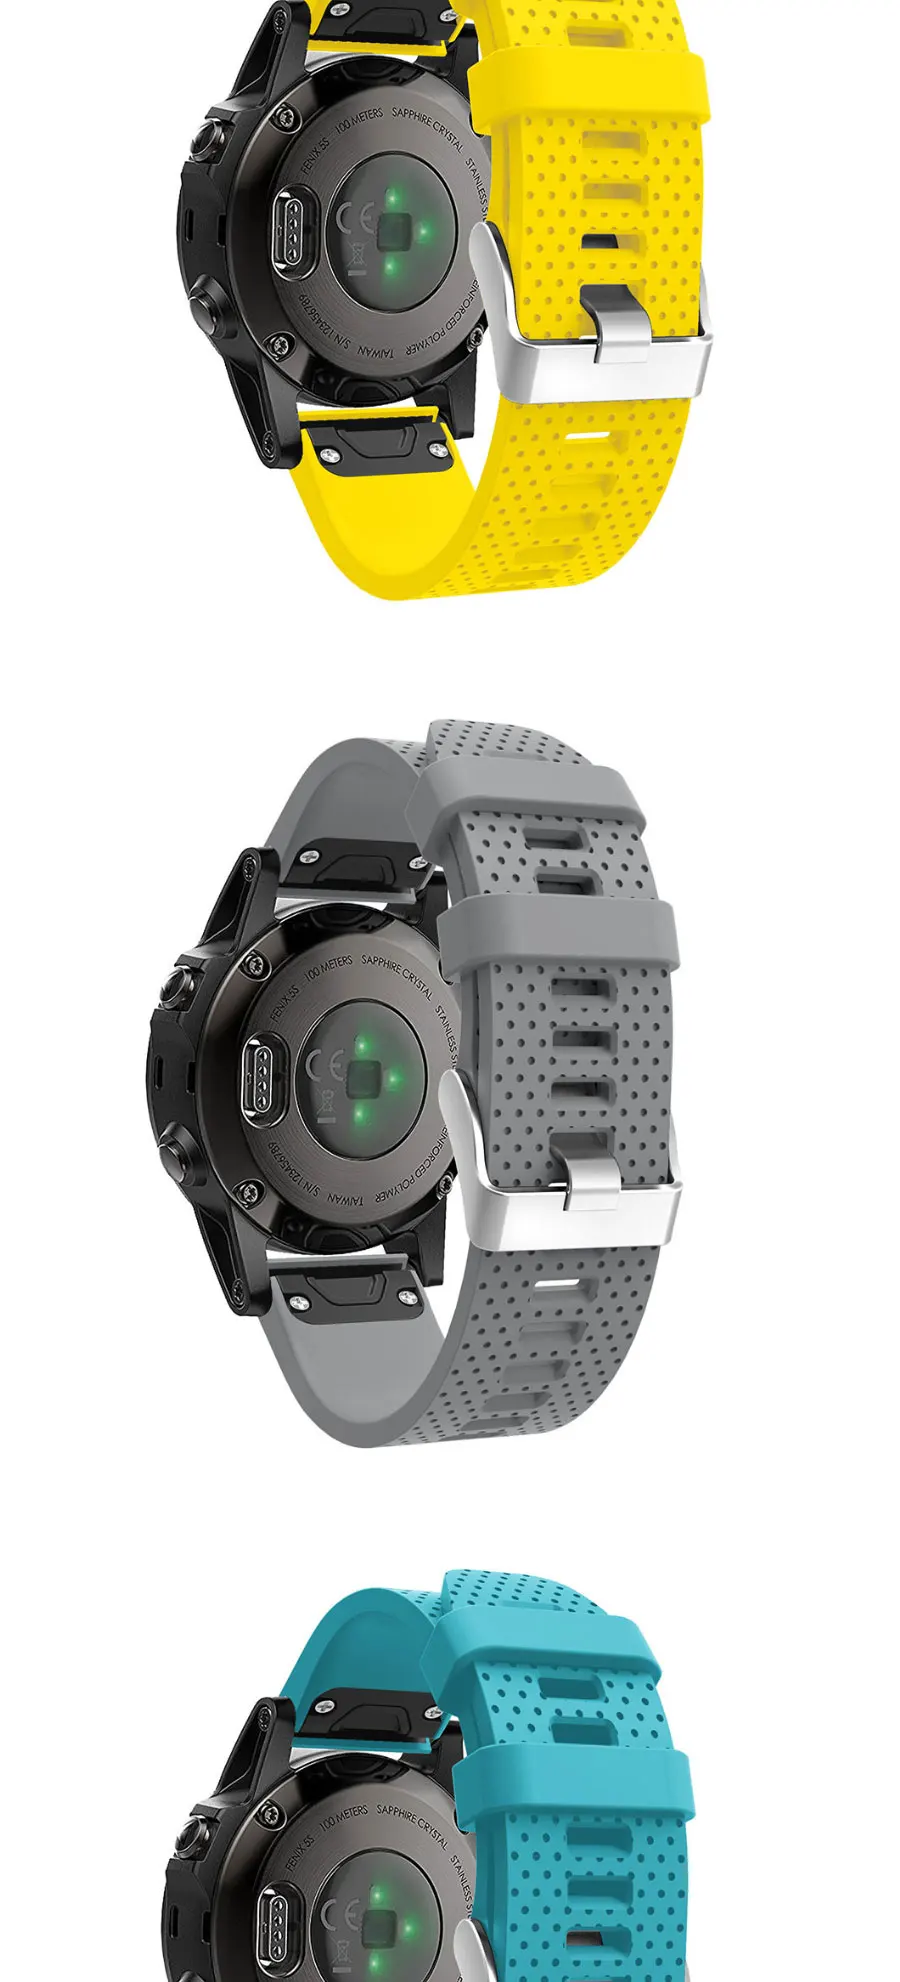 20 22 26 мм смарт-часы ремешок для Garmin Fenix 5X5 5S 3 3HR forerunner 935 часы Quick Release силиконовый браслет Easyfit